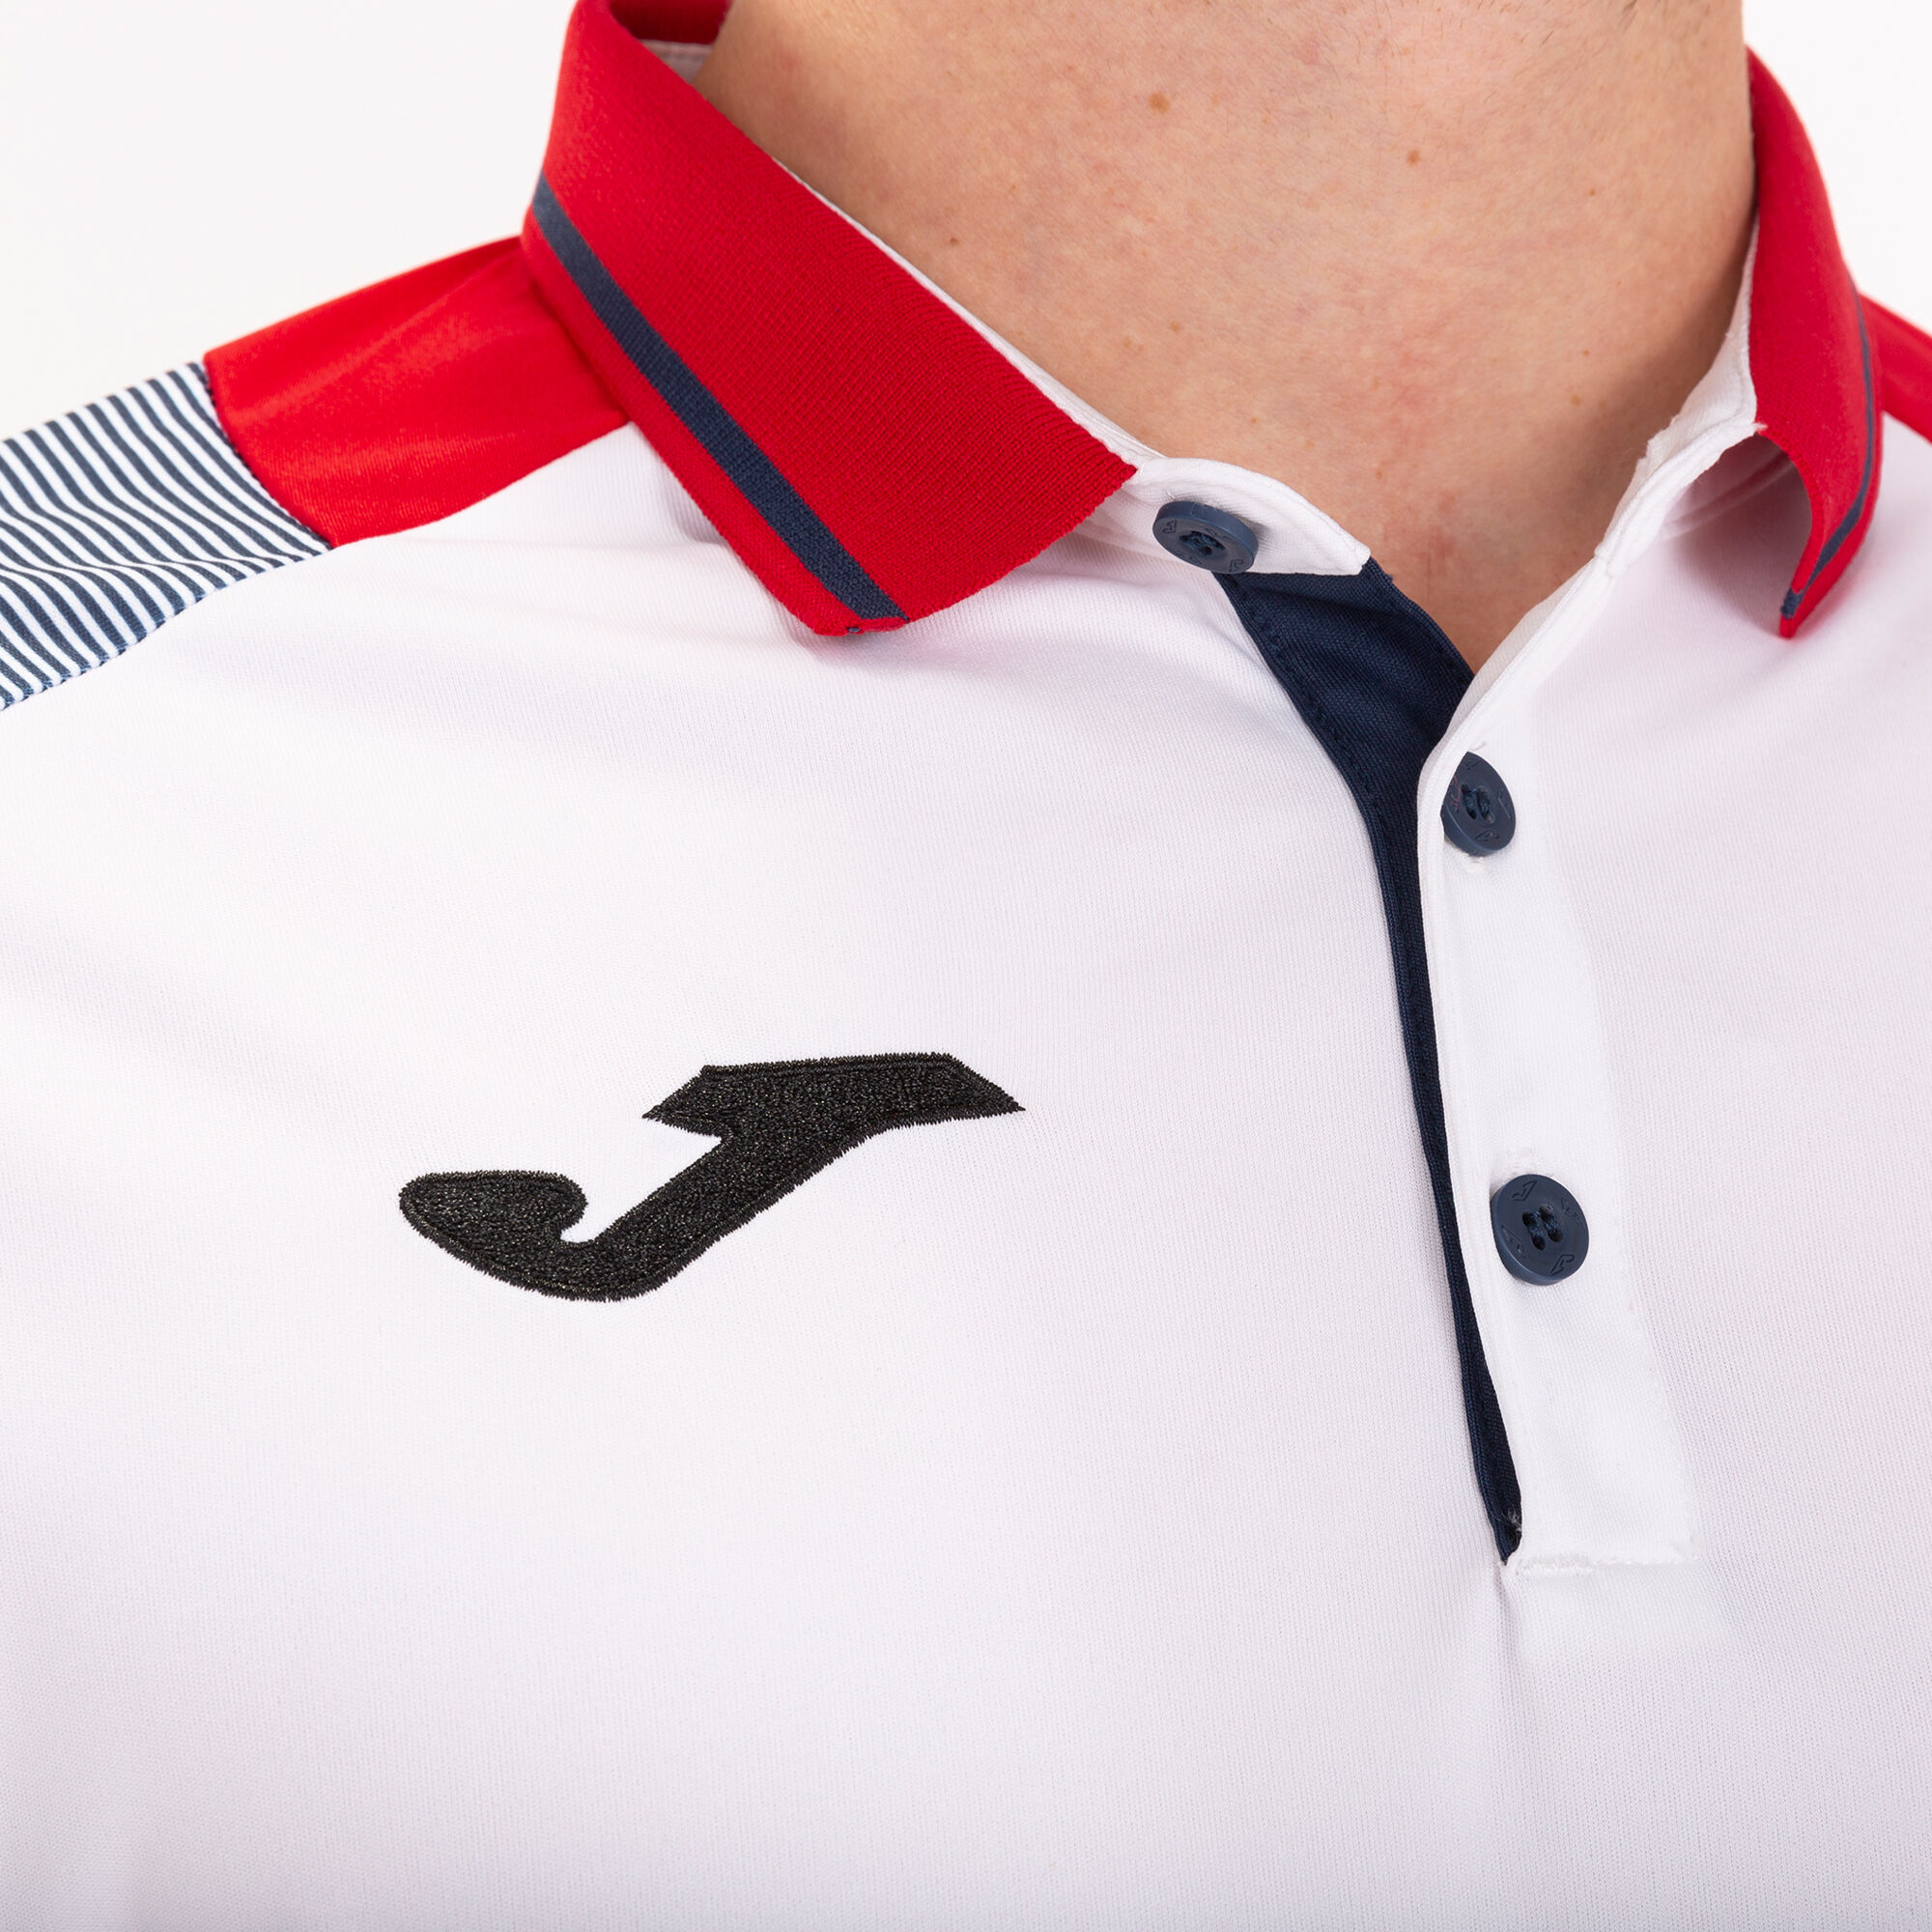 Joma Essential II Camiseta de Tenis Niño - Red/White